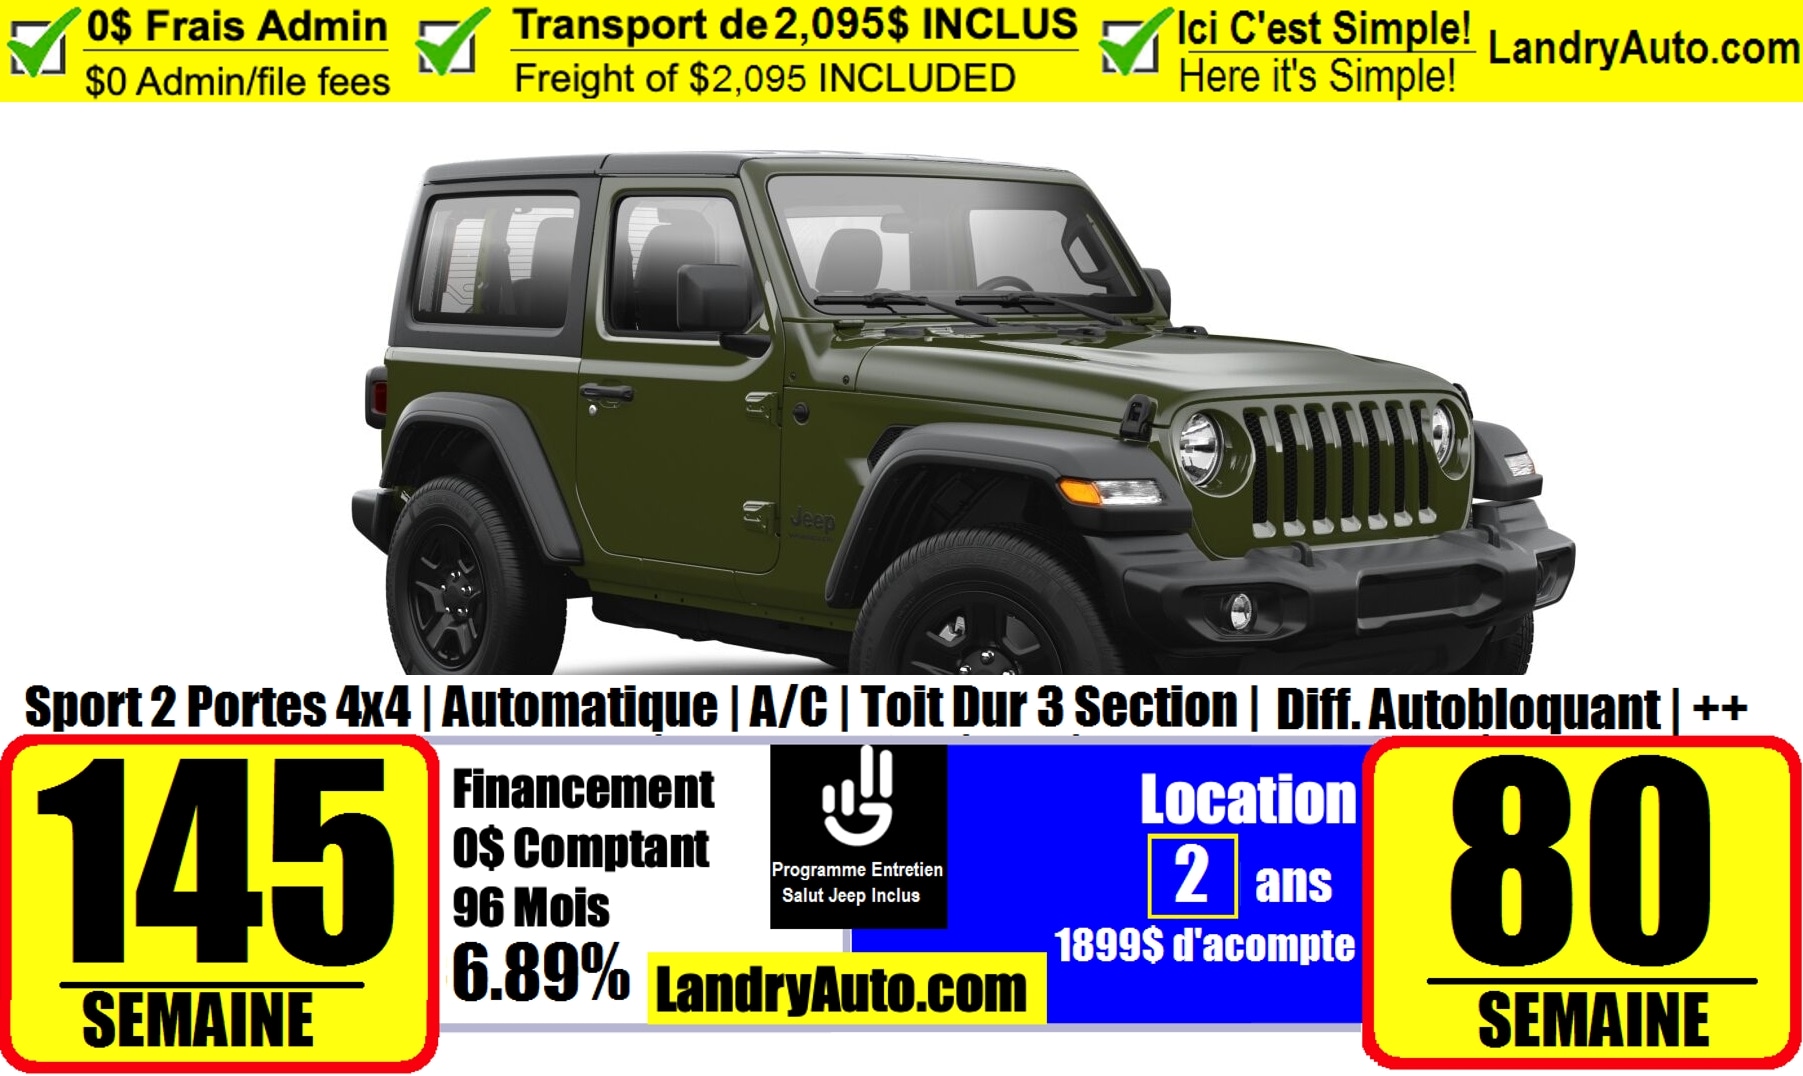 Total 63+ imagen 2 door jeep wrangler lease deals 